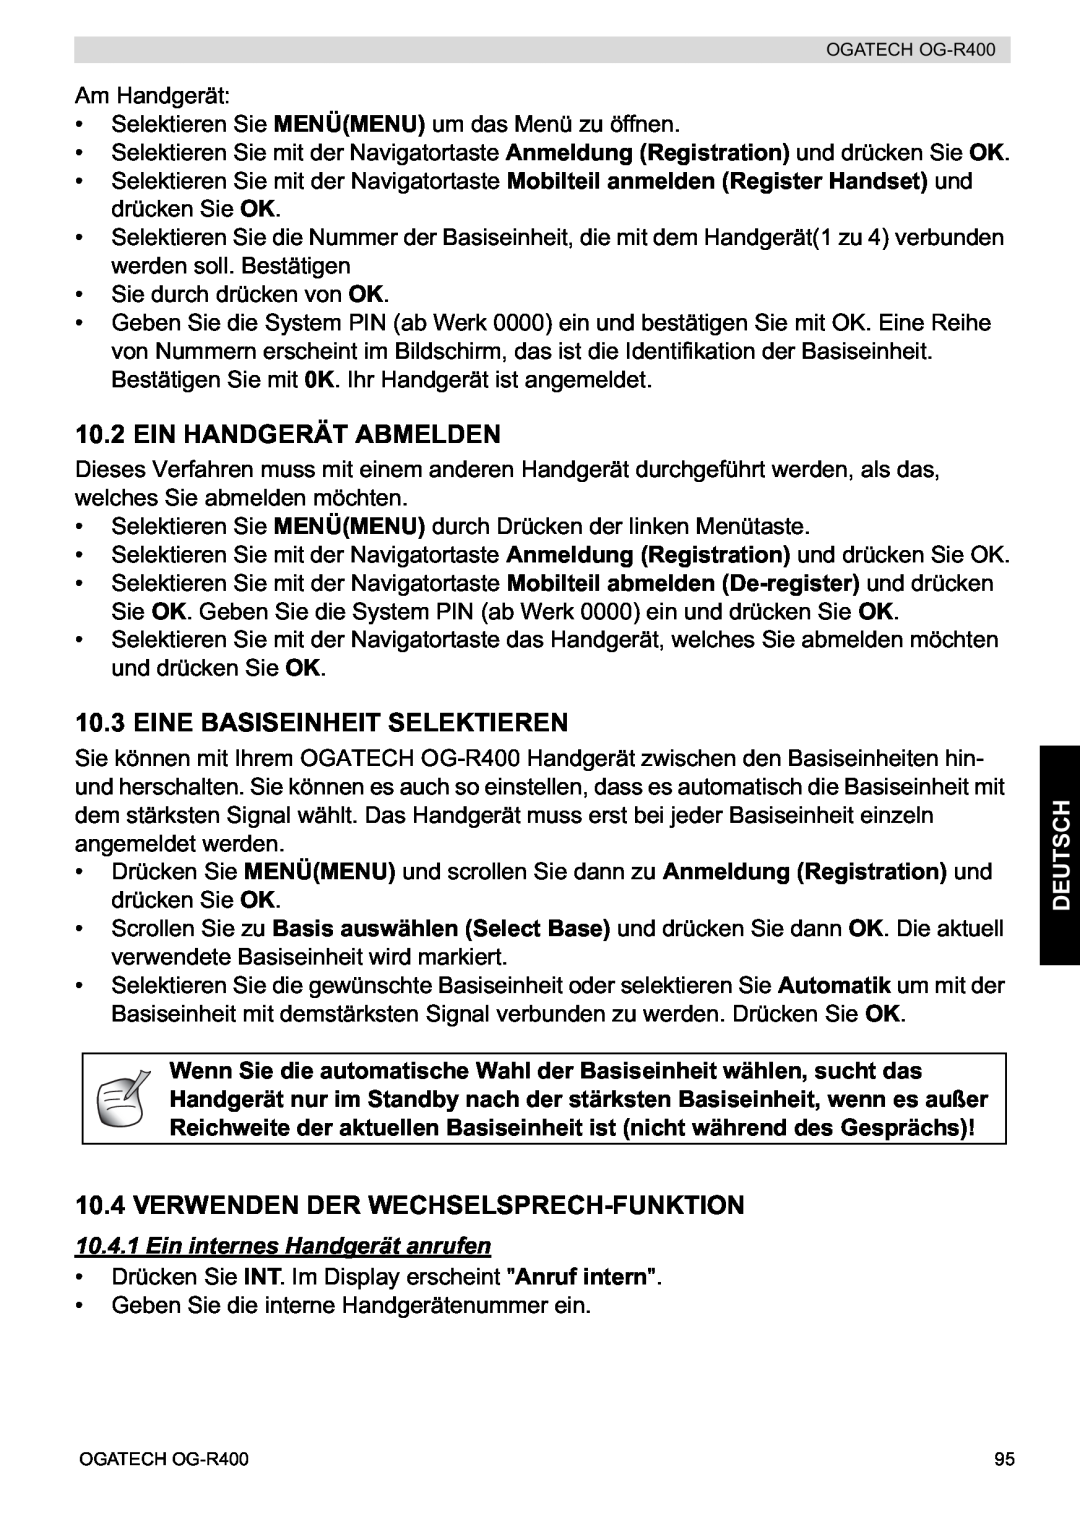 Topcom OG-R400 manual Ein Handgerät Abmelden, Eine Basiseinheit Selektieren, Verwenden Der Wechselsprech-Funktion, Deutsch 